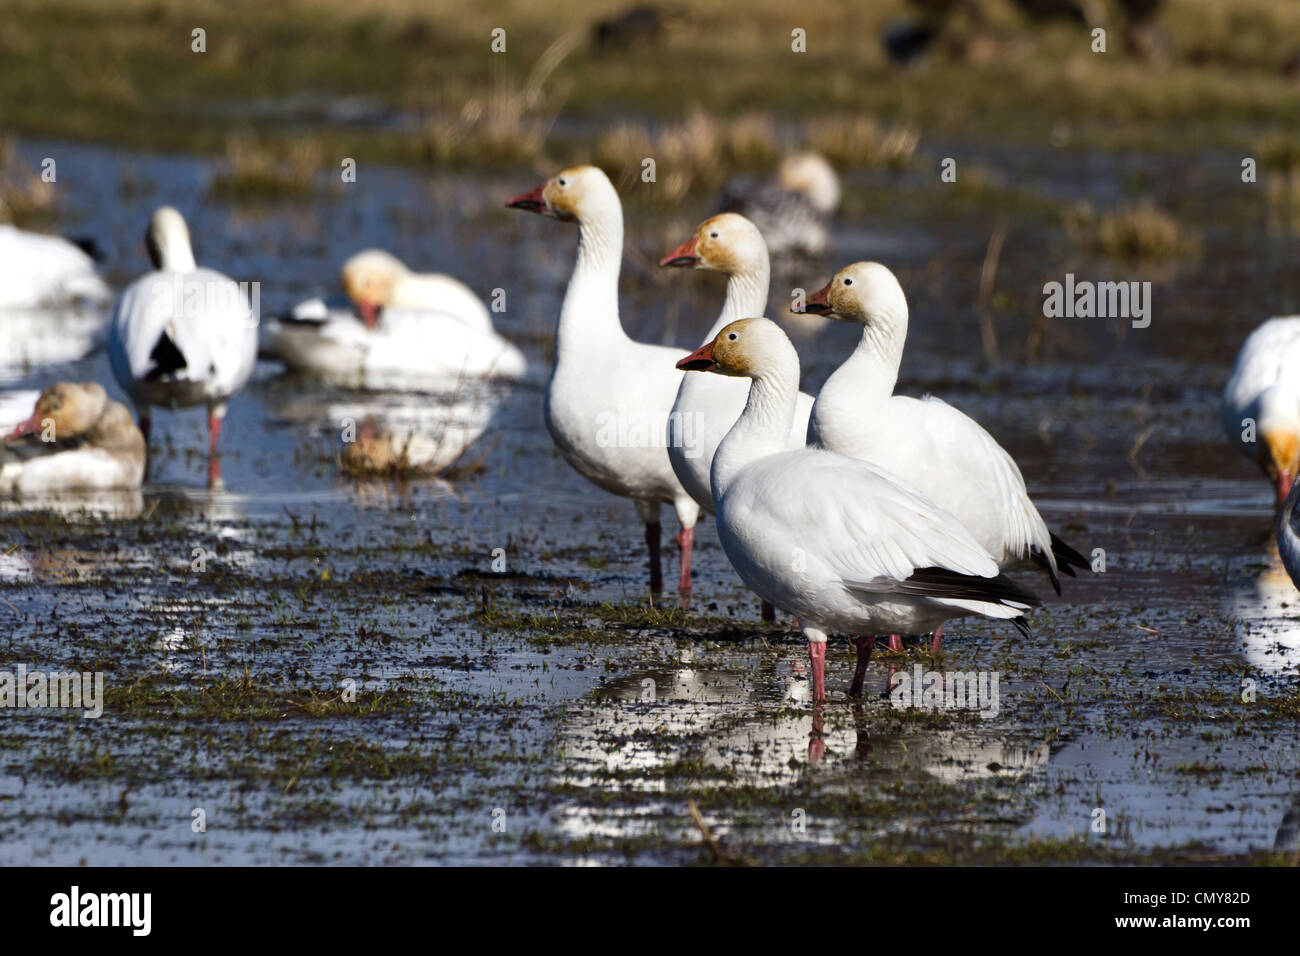 Snow Goose, migratory bird close up shot Stock Photo